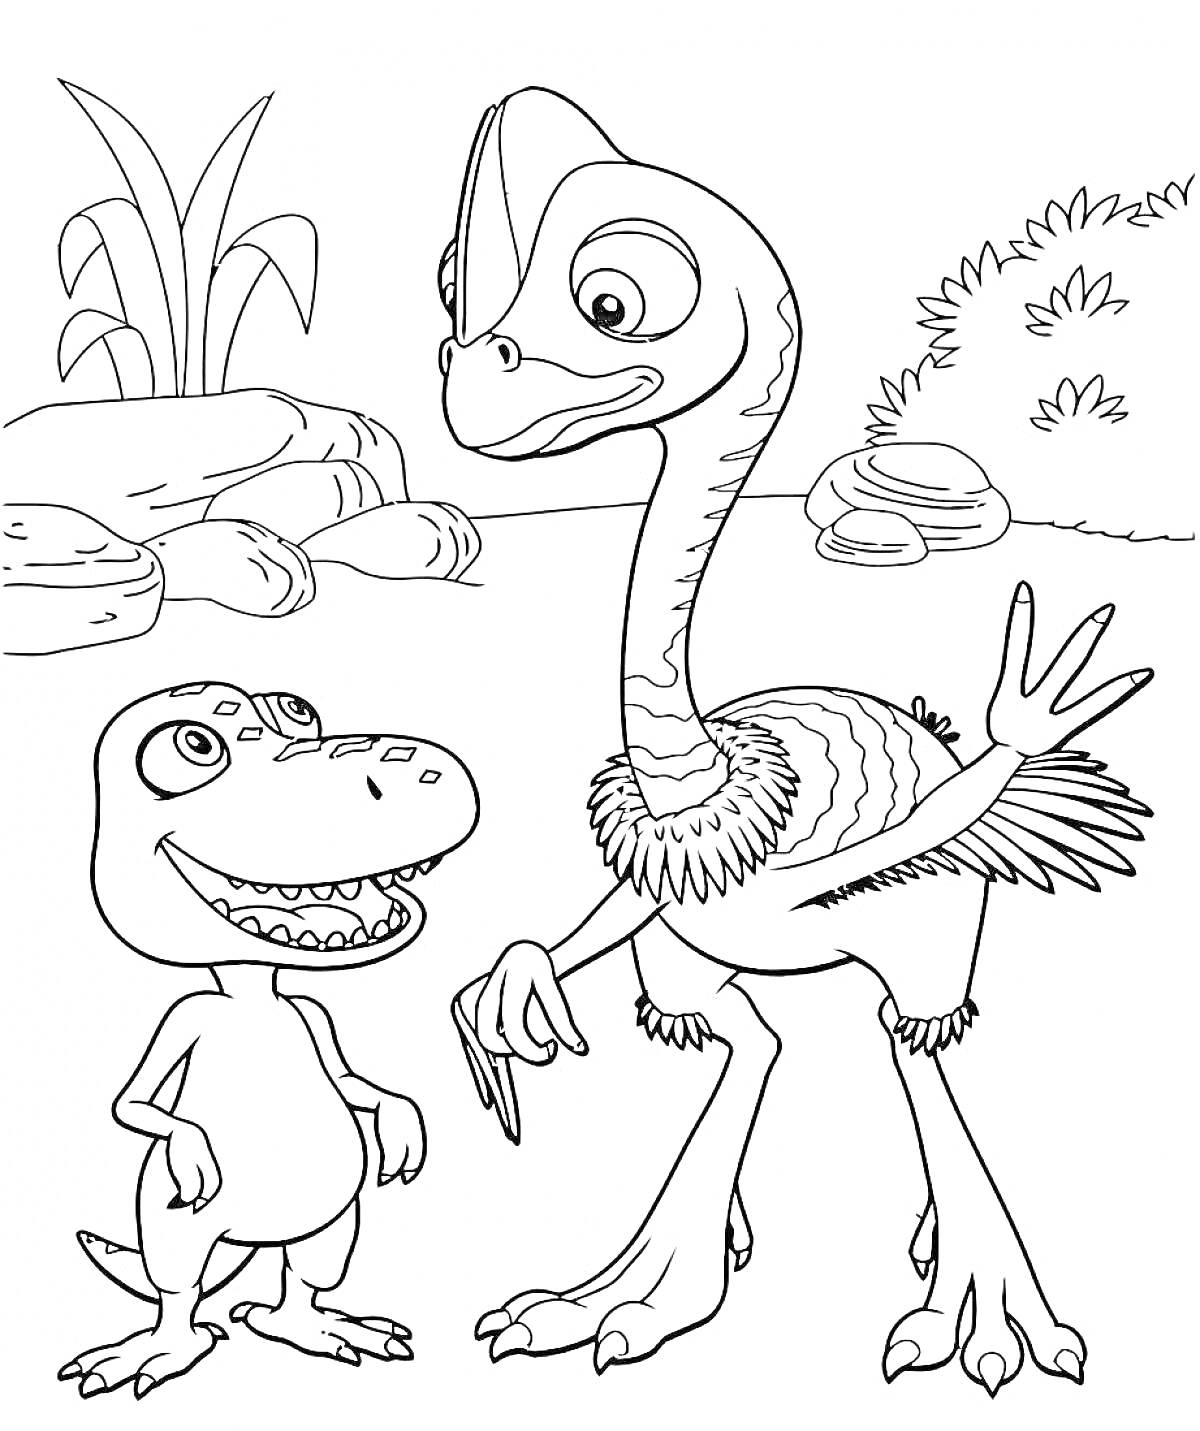 Раскраска Турбозавры среди камней и растений